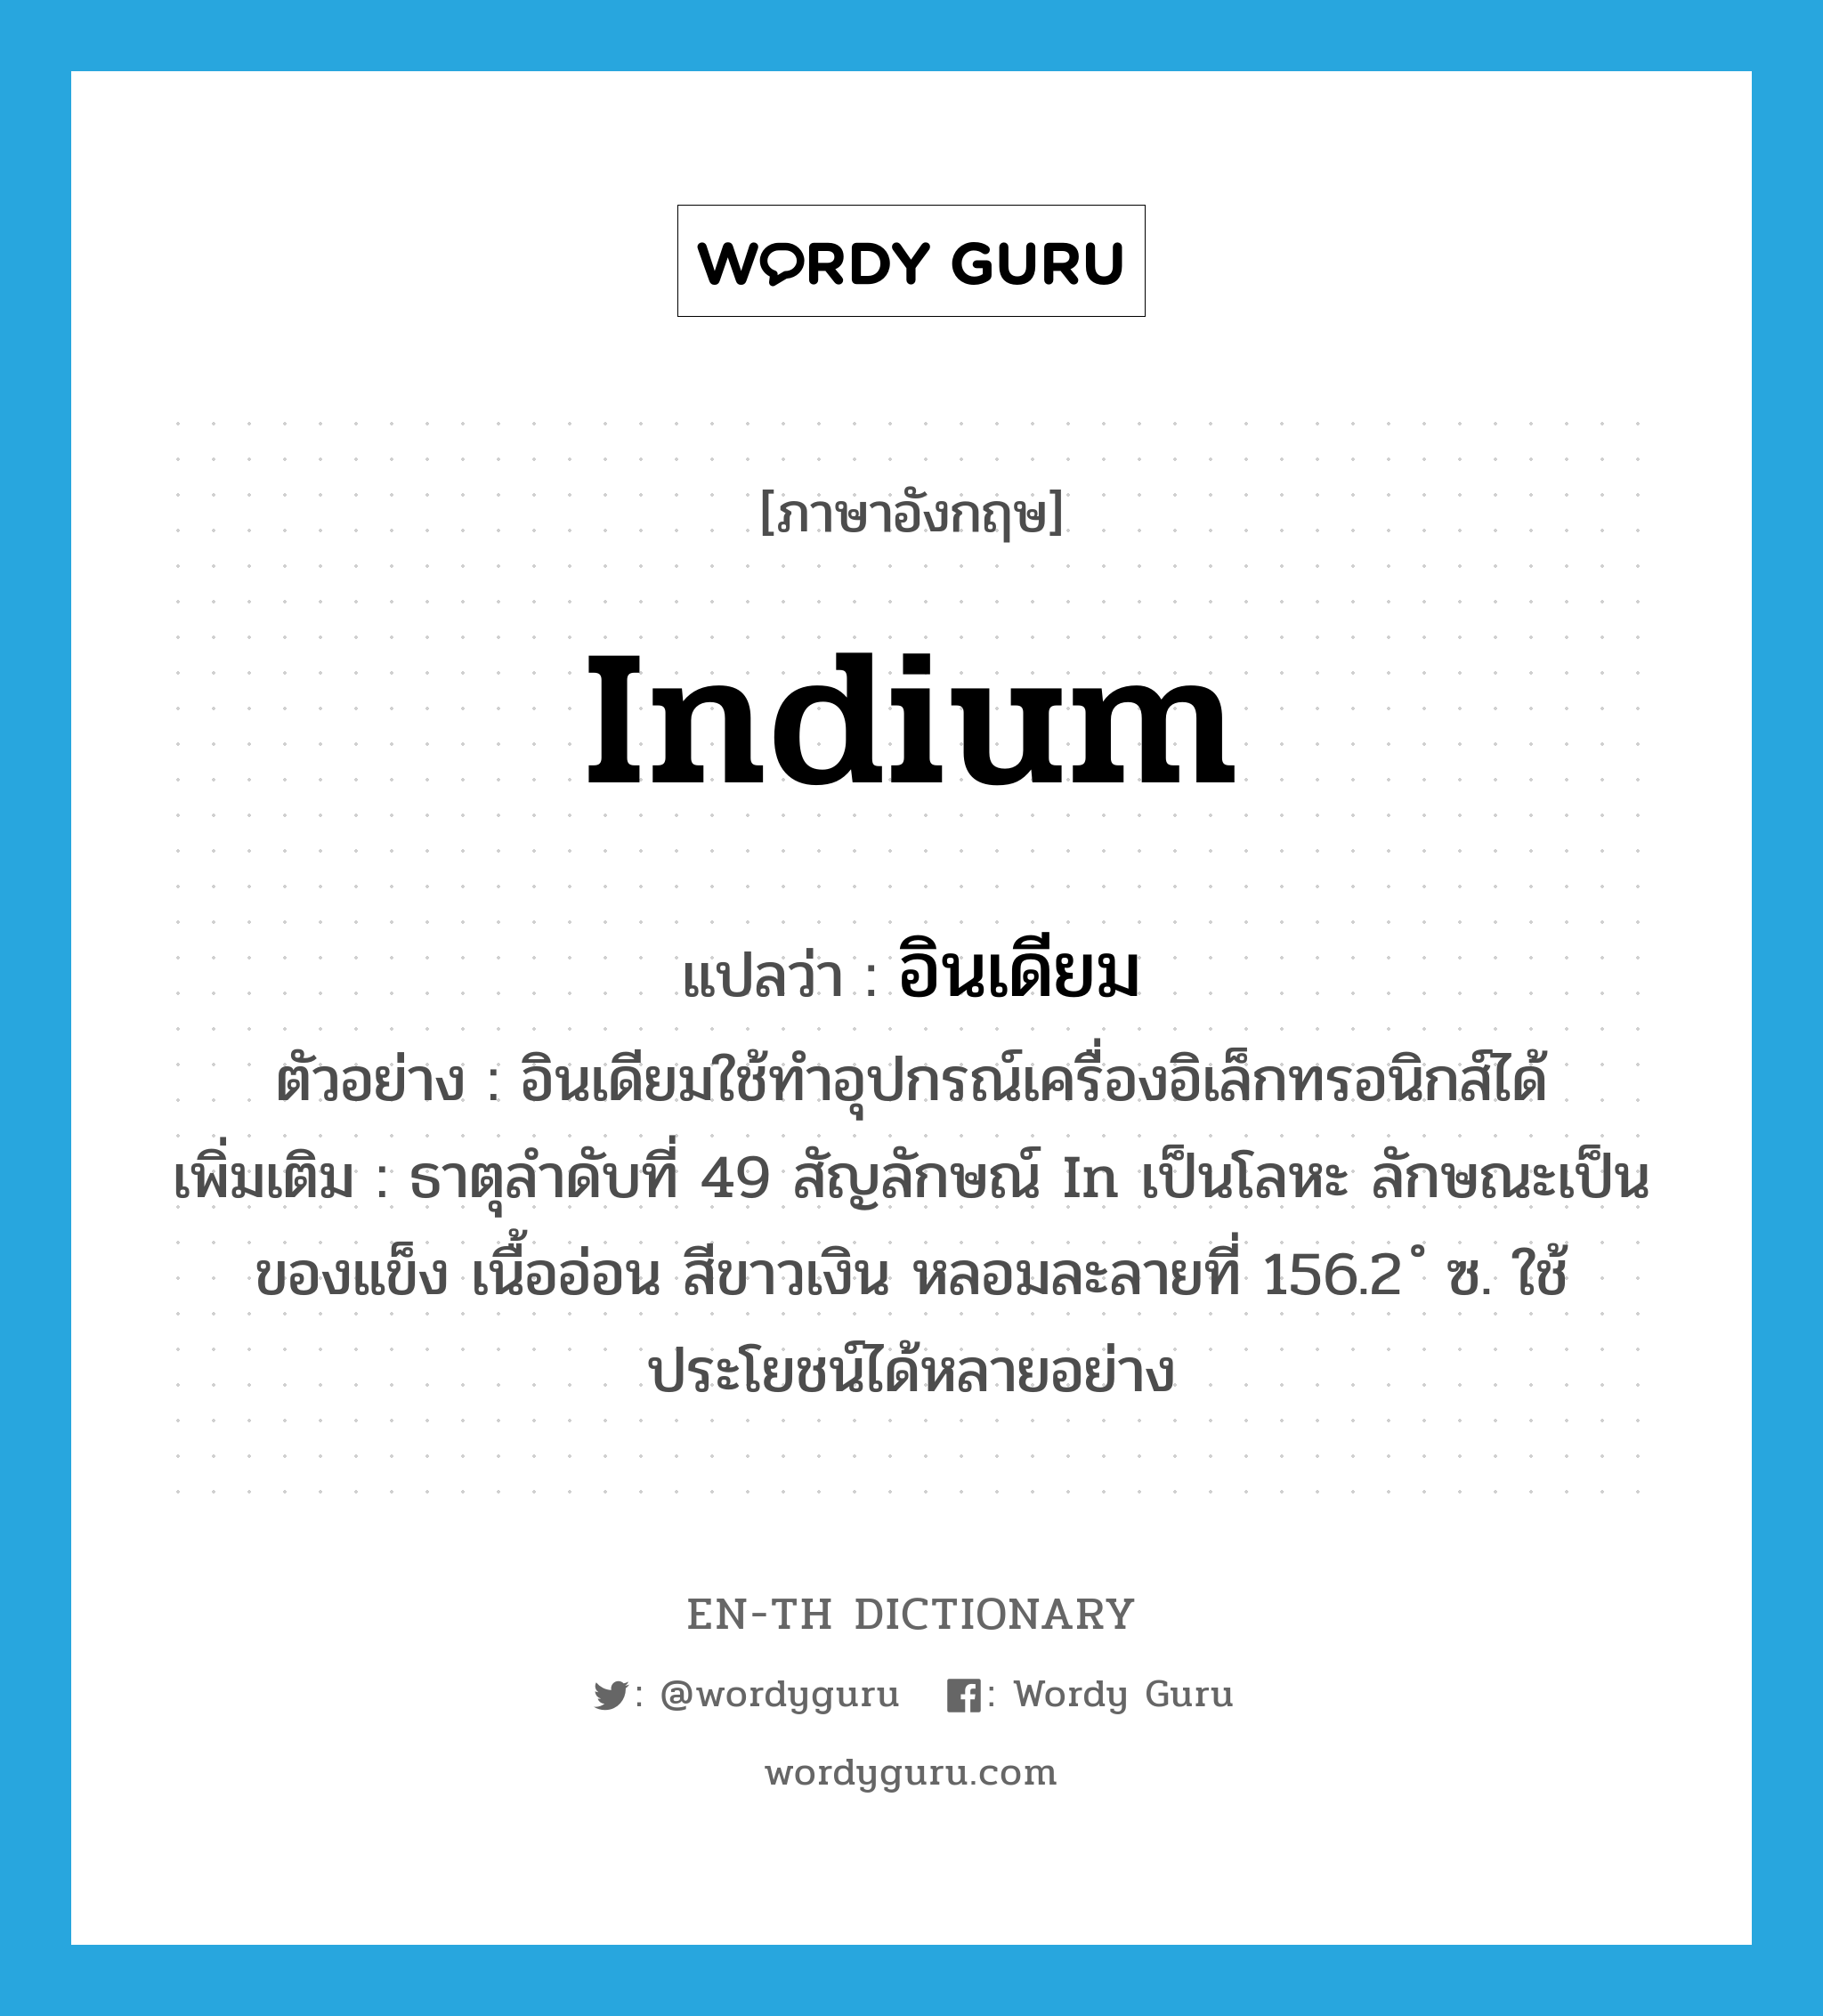 อินเดียม ภาษาอังกฤษ?, คำศัพท์ภาษาอังกฤษ อินเดียม แปลว่า indium ประเภท N ตัวอย่าง อินเดียมใช้ทำอุปกรณ์เครื่องอิเล็กทรอนิกส์ได้ เพิ่มเติม ธาตุลำดับที่ 49 สัญลักษณ์ In เป็นโลหะ ลักษณะเป็นของแข็ง เนื้ออ่อน สีขาวเงิน หลอมละลายที่ 156.2 ํ ซ. ใช้ประโยชน์ได้หลายอย่าง หมวด N